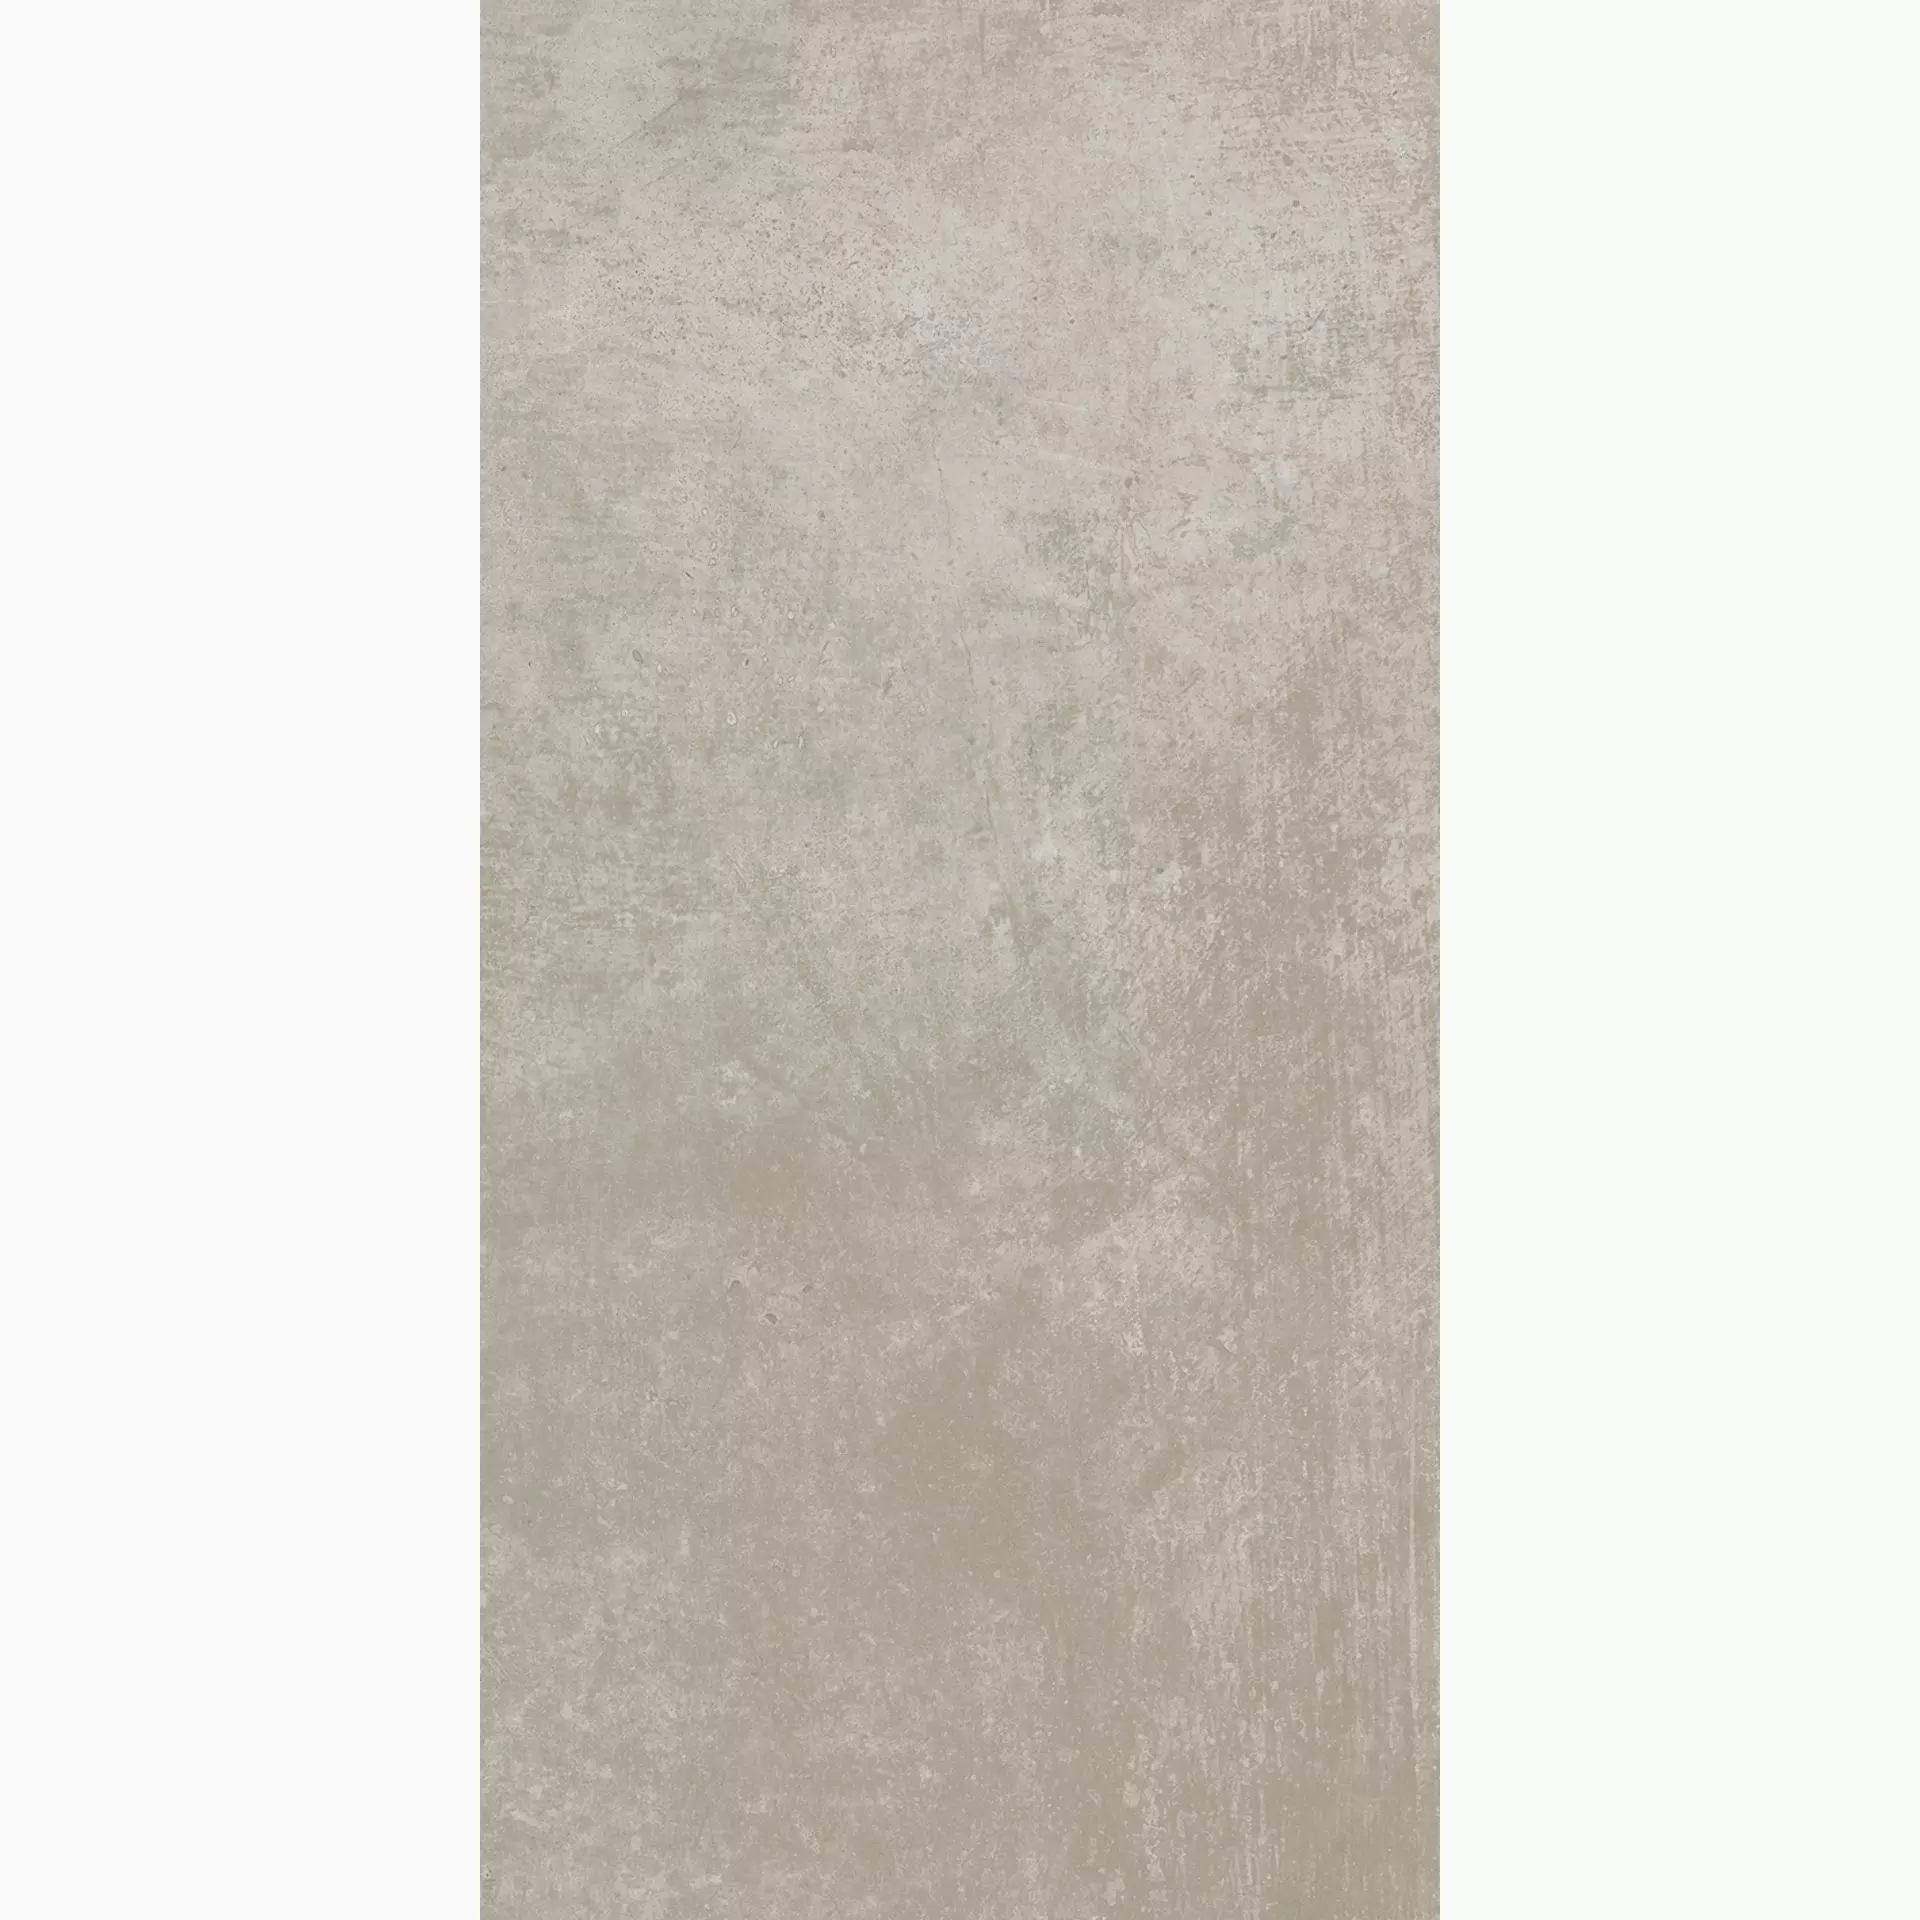 Wandfliese,Bodenfliese Villeroy & Boch Atlanta Sand Grey Matt Sand Grey 2730-AL70 matt 60x120cm rektifiziert 10mm